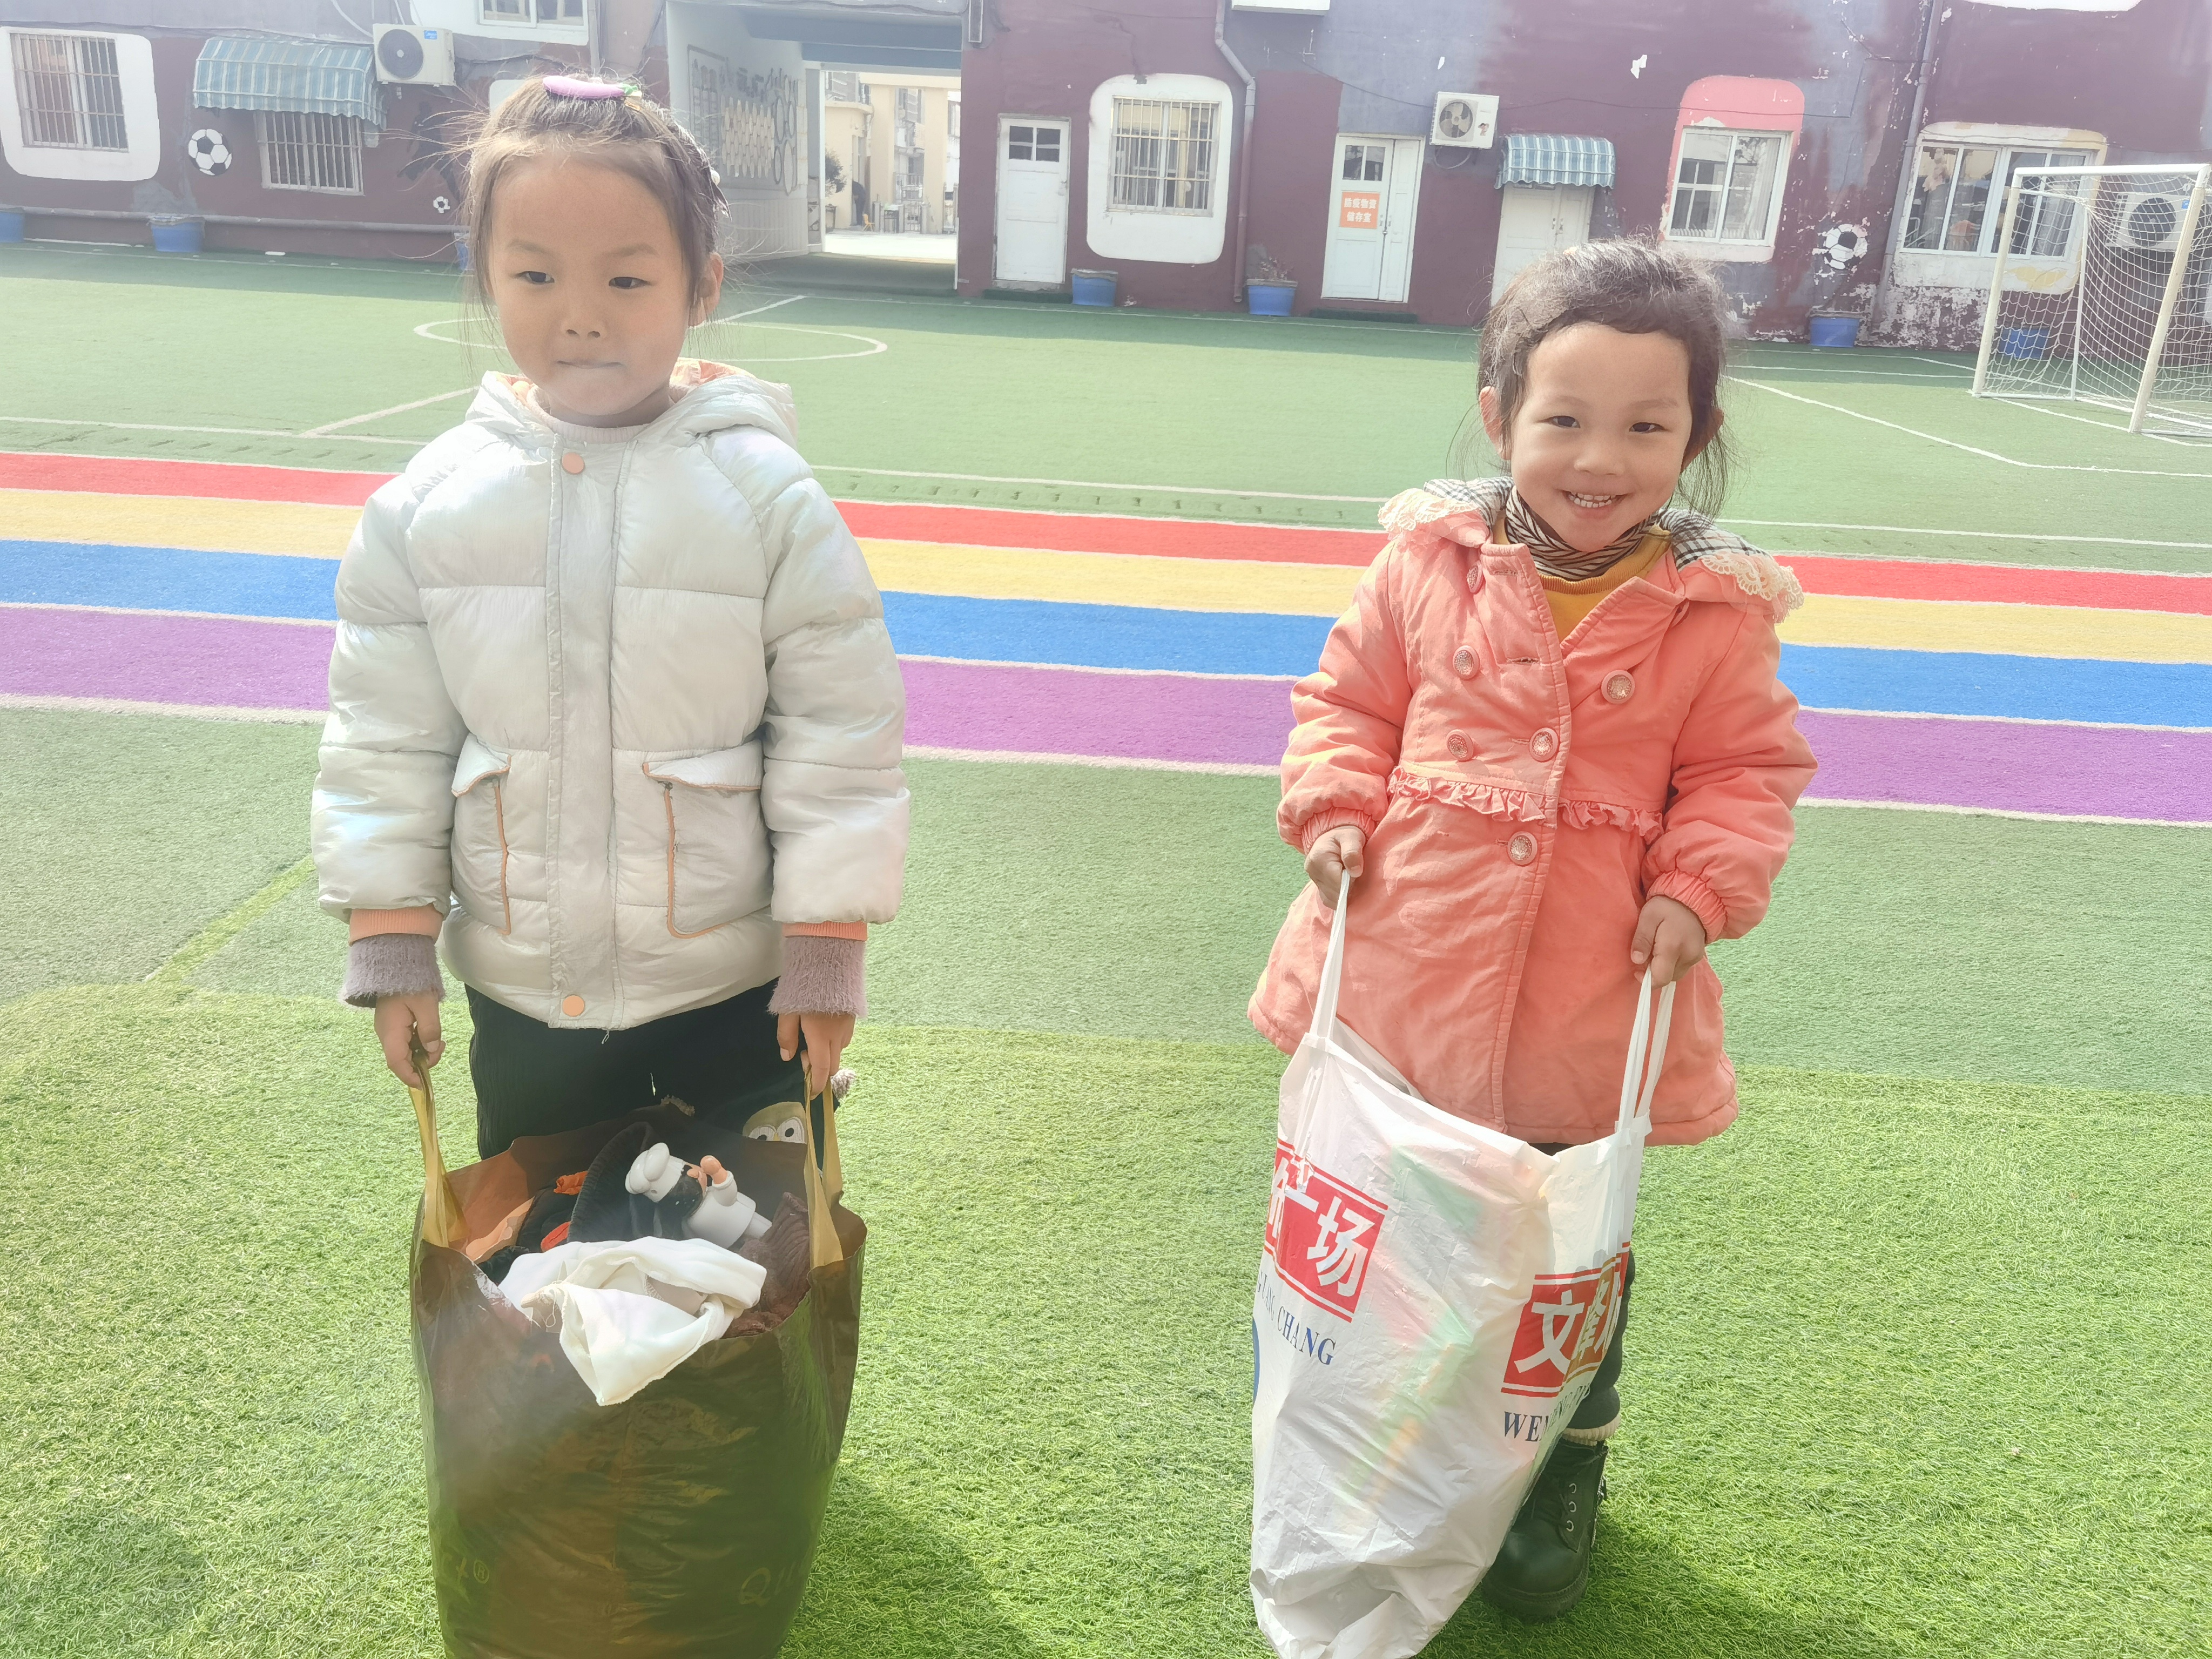 以爱之名 分头行动  ——瓦窑镇中心幼儿园小二班捐资助学活动